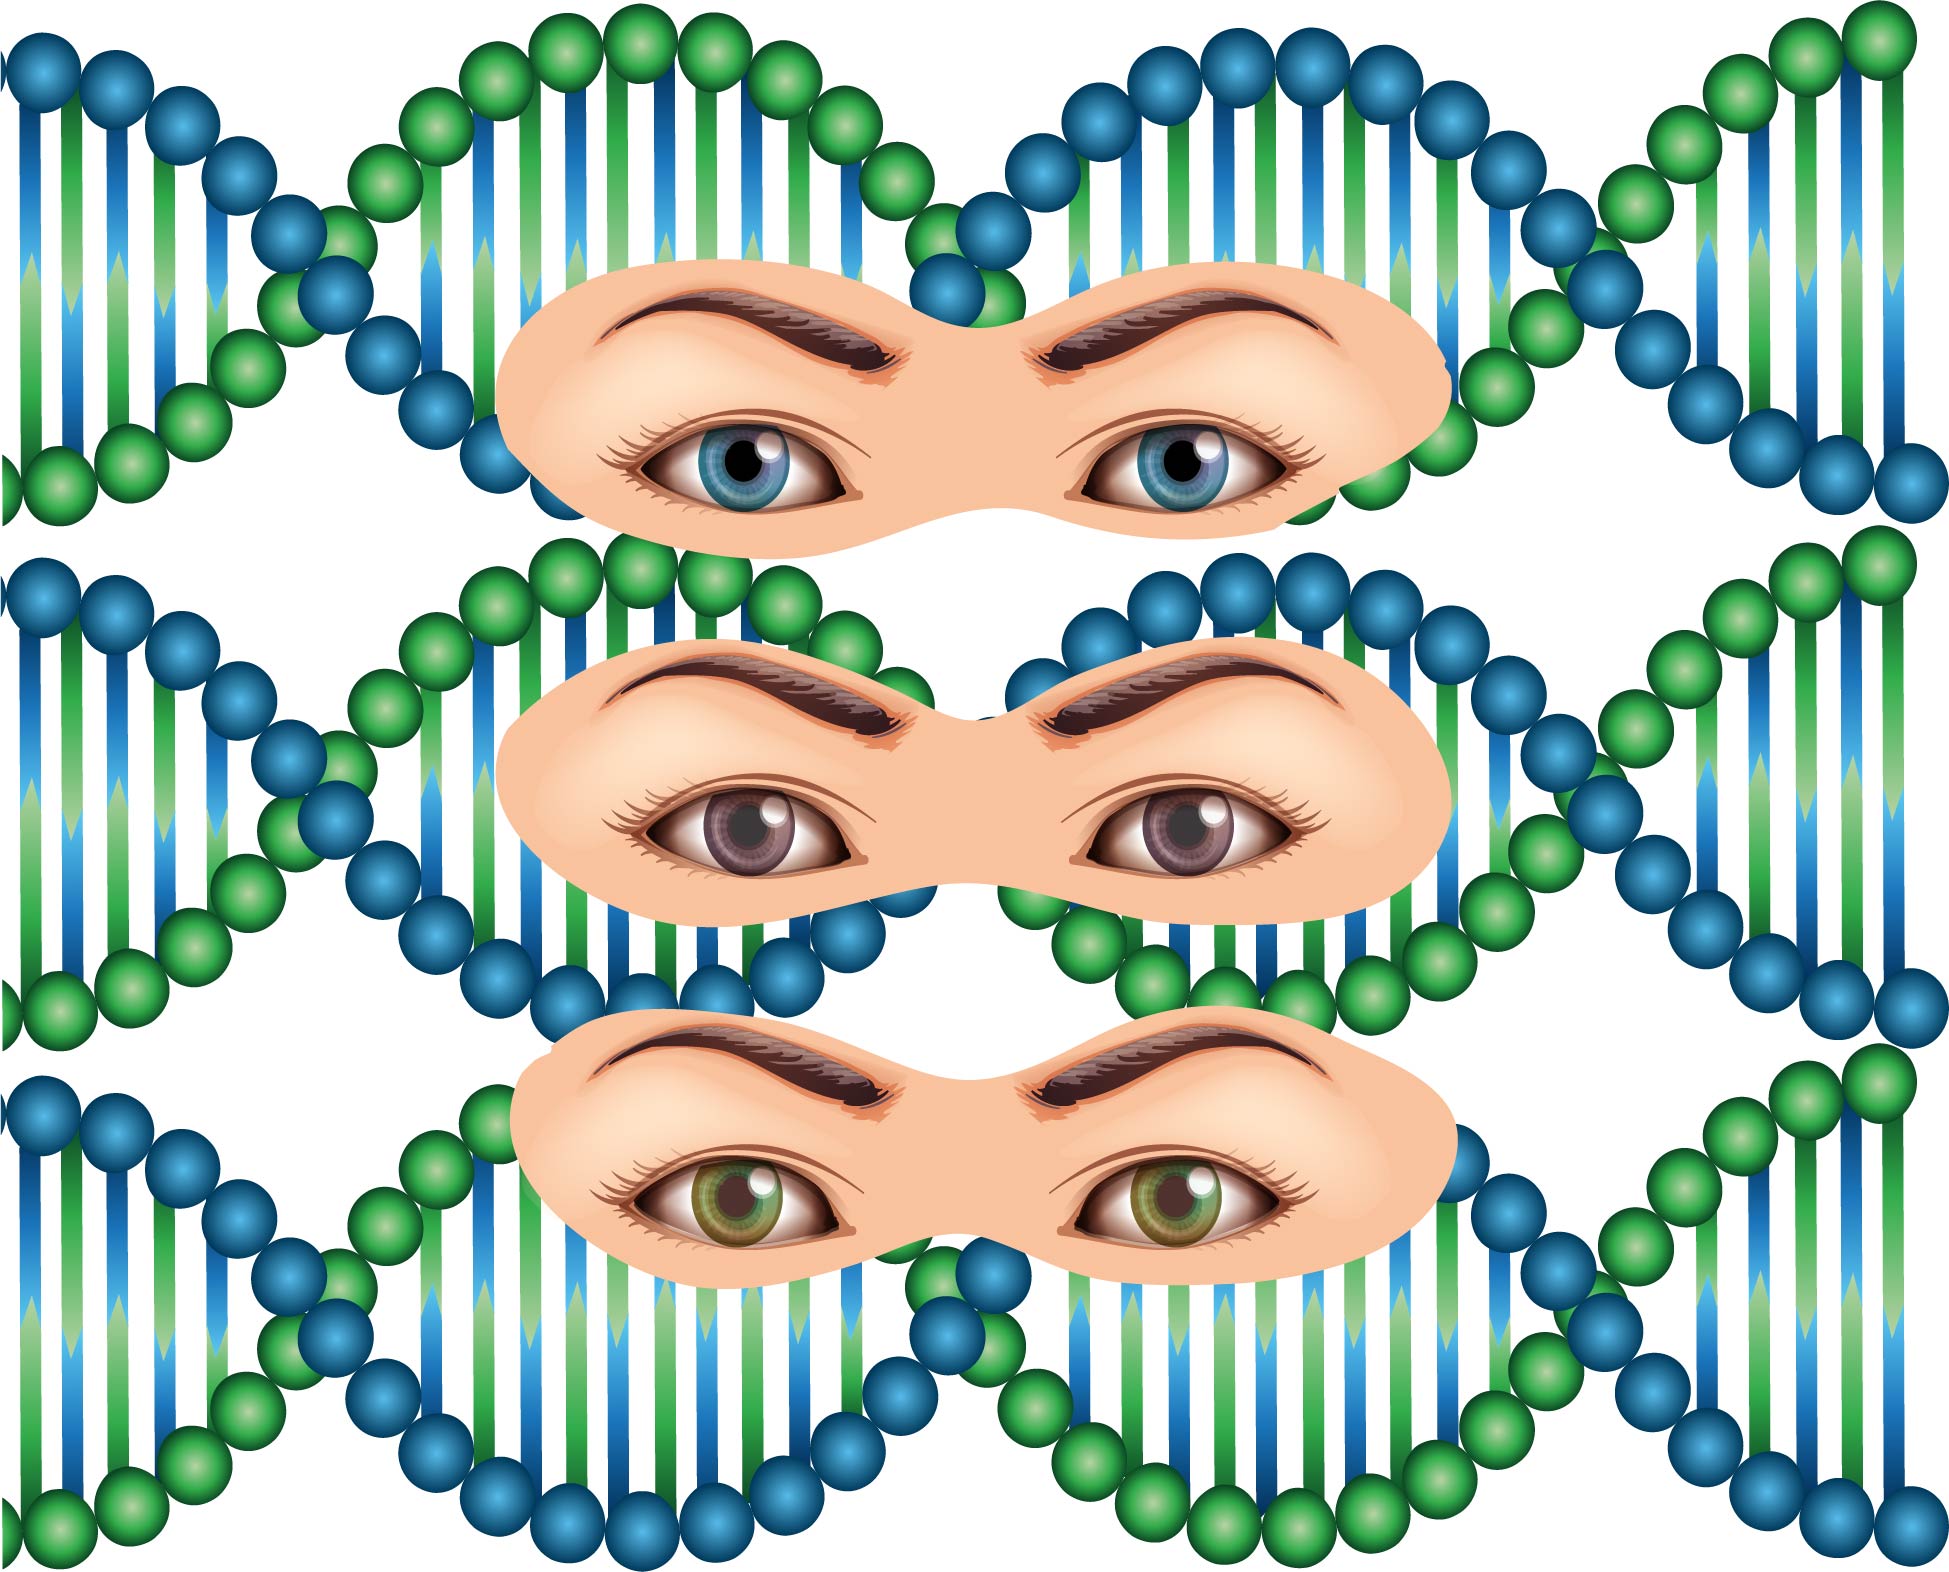 When our DNA draws us a portrait